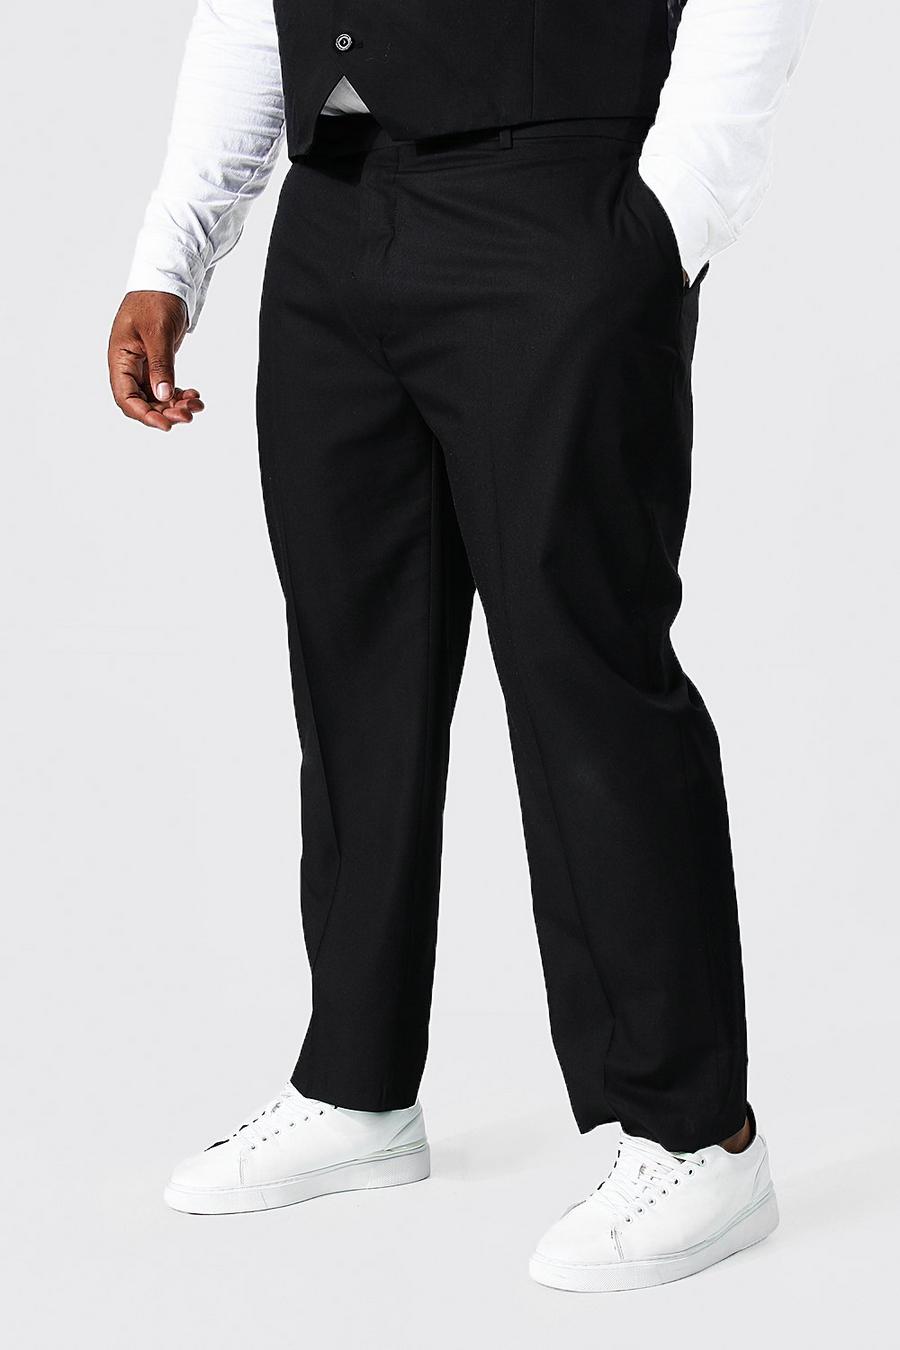 שחור negro מכנסיים אלגנטיים בגזרה צרה למידות גדולות